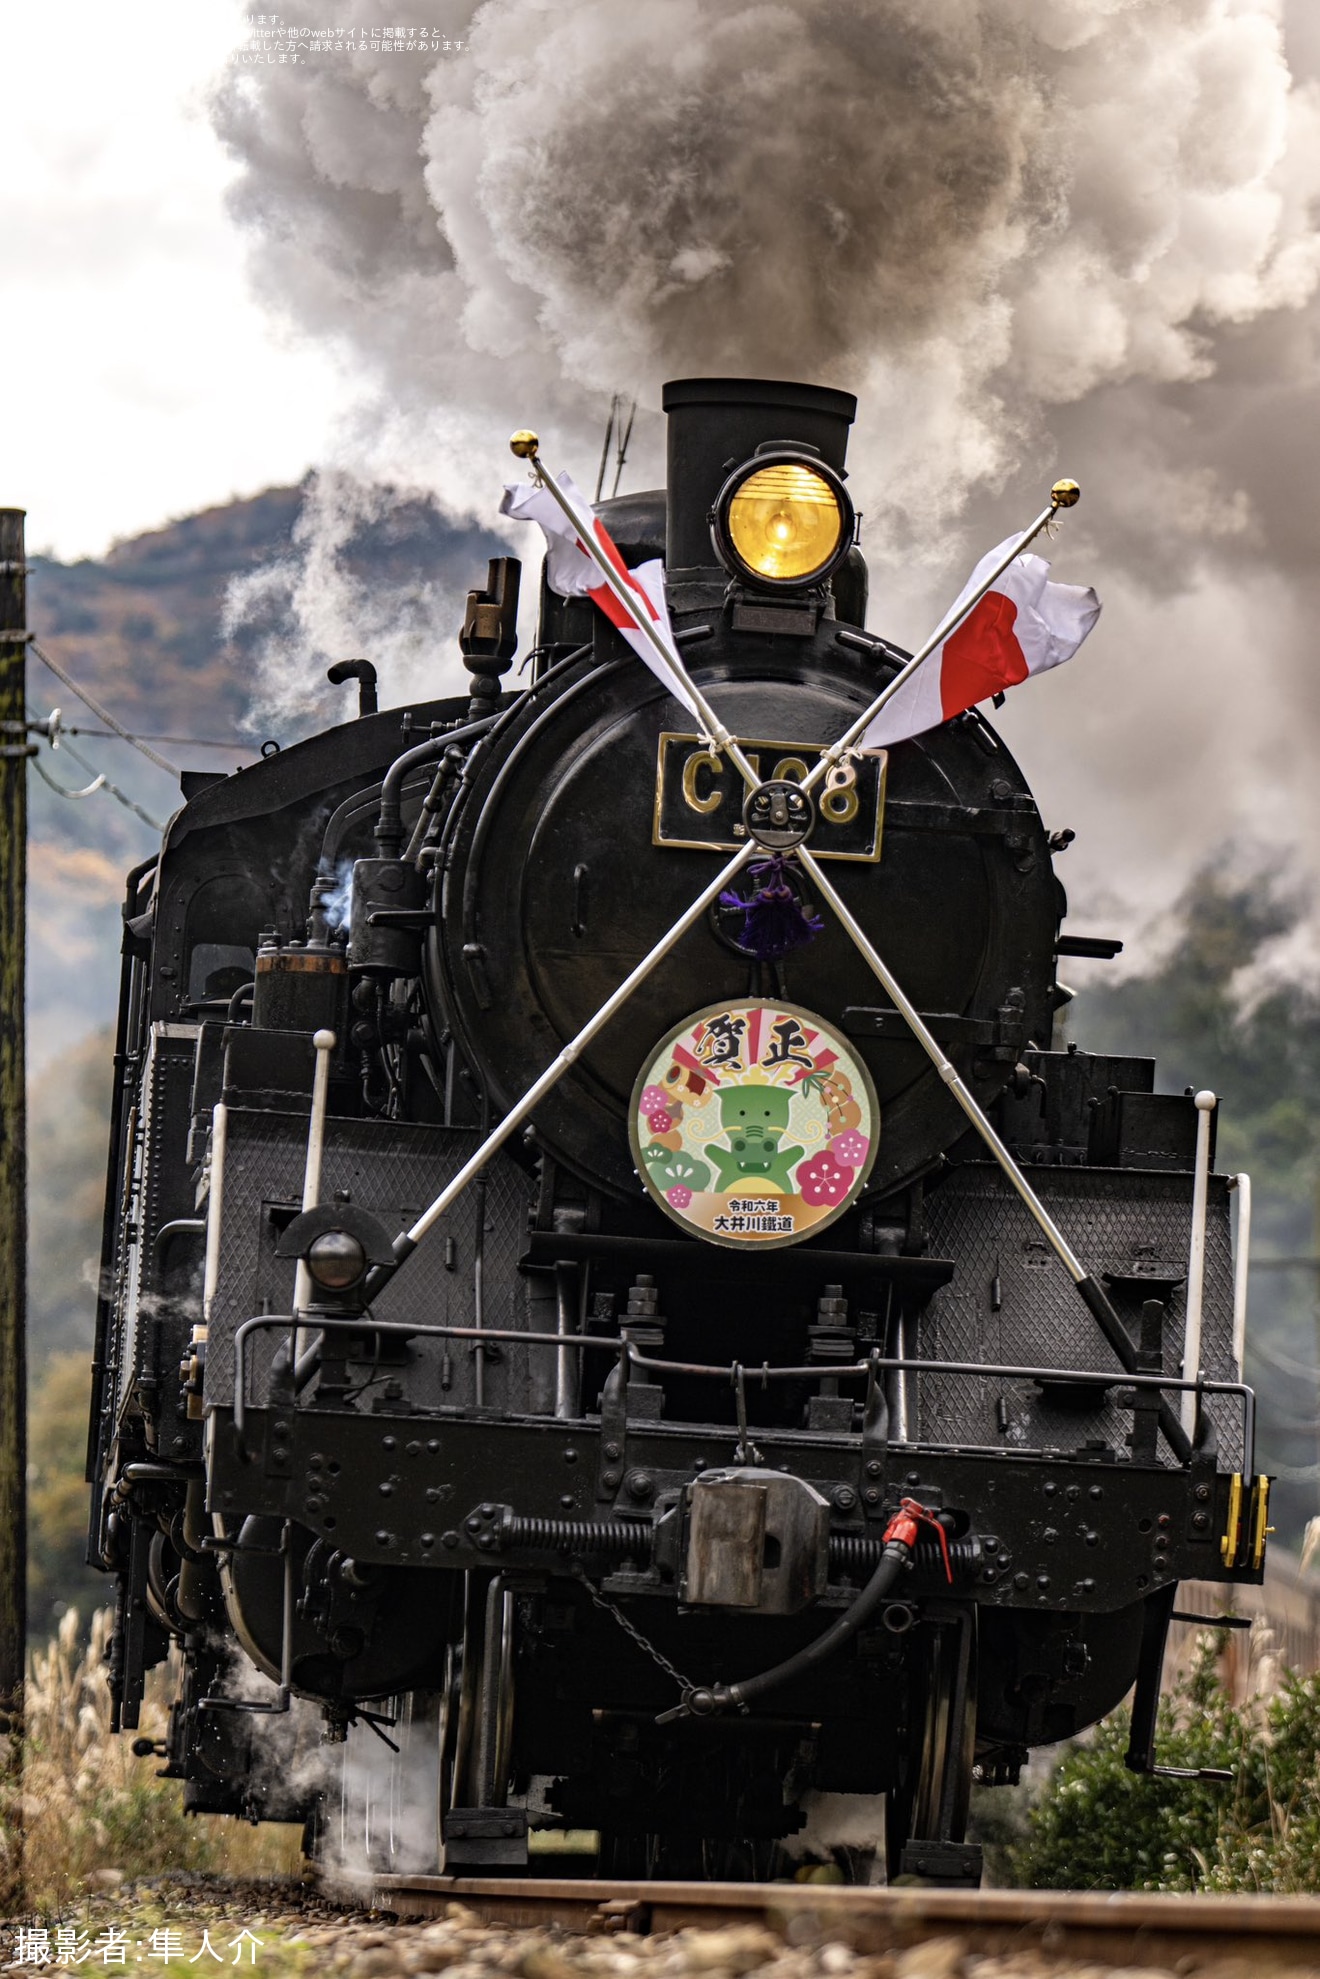 【大鐵】「SL急行」日章旗と「賀正ヘッドマーク」を正月に先行して掲出して運行の拡大写真